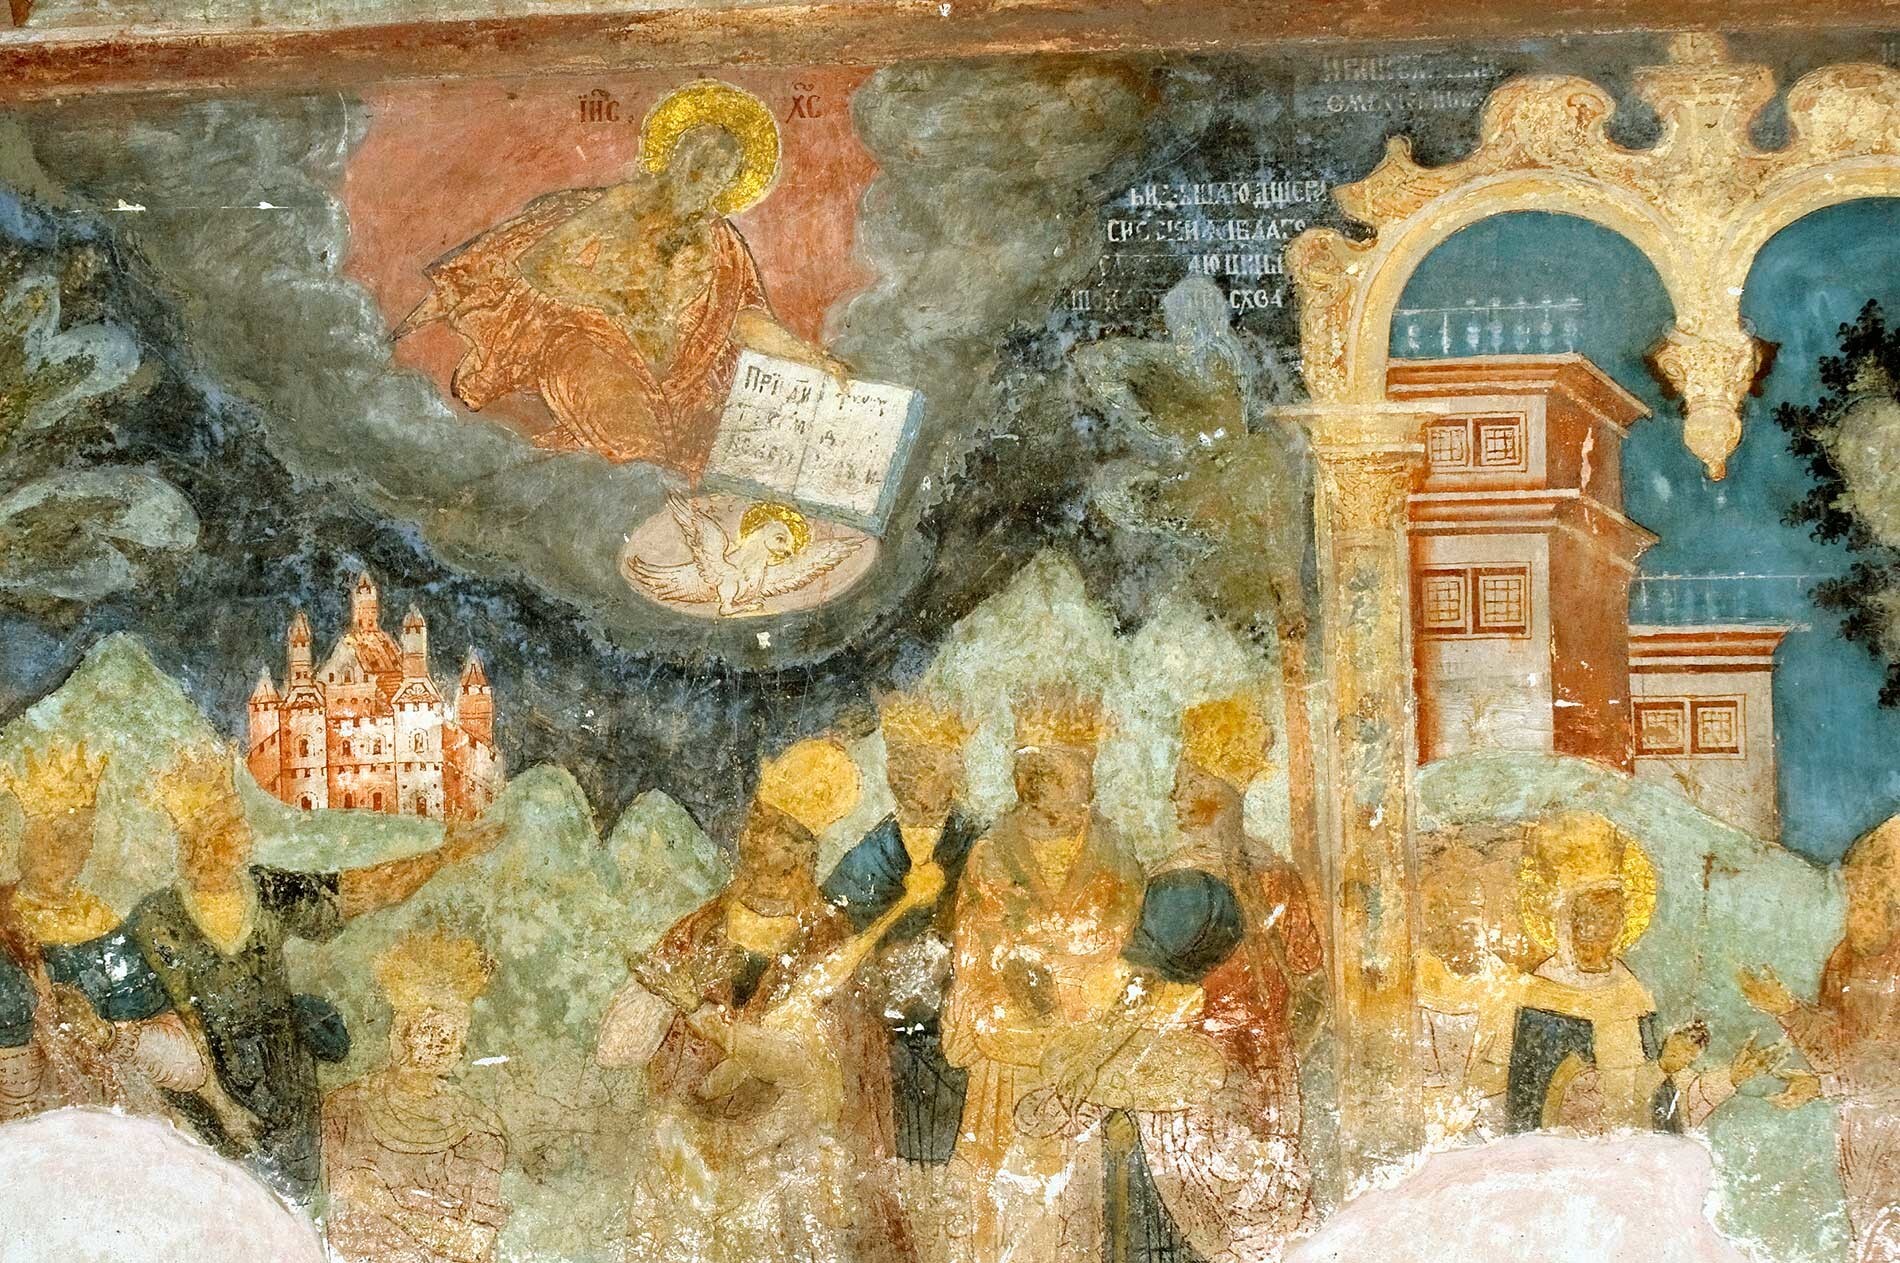 Église Saint-Jean Chrysostome de Korovniki. Les fresques du mur ouest incluent la cour de Byzance dont le luxe a été critiqué par saint Jean Chrysostome. Le nuage rouge contient l'image du Christ au-dessus de personnages couronnés au palais. 15 août 2017.